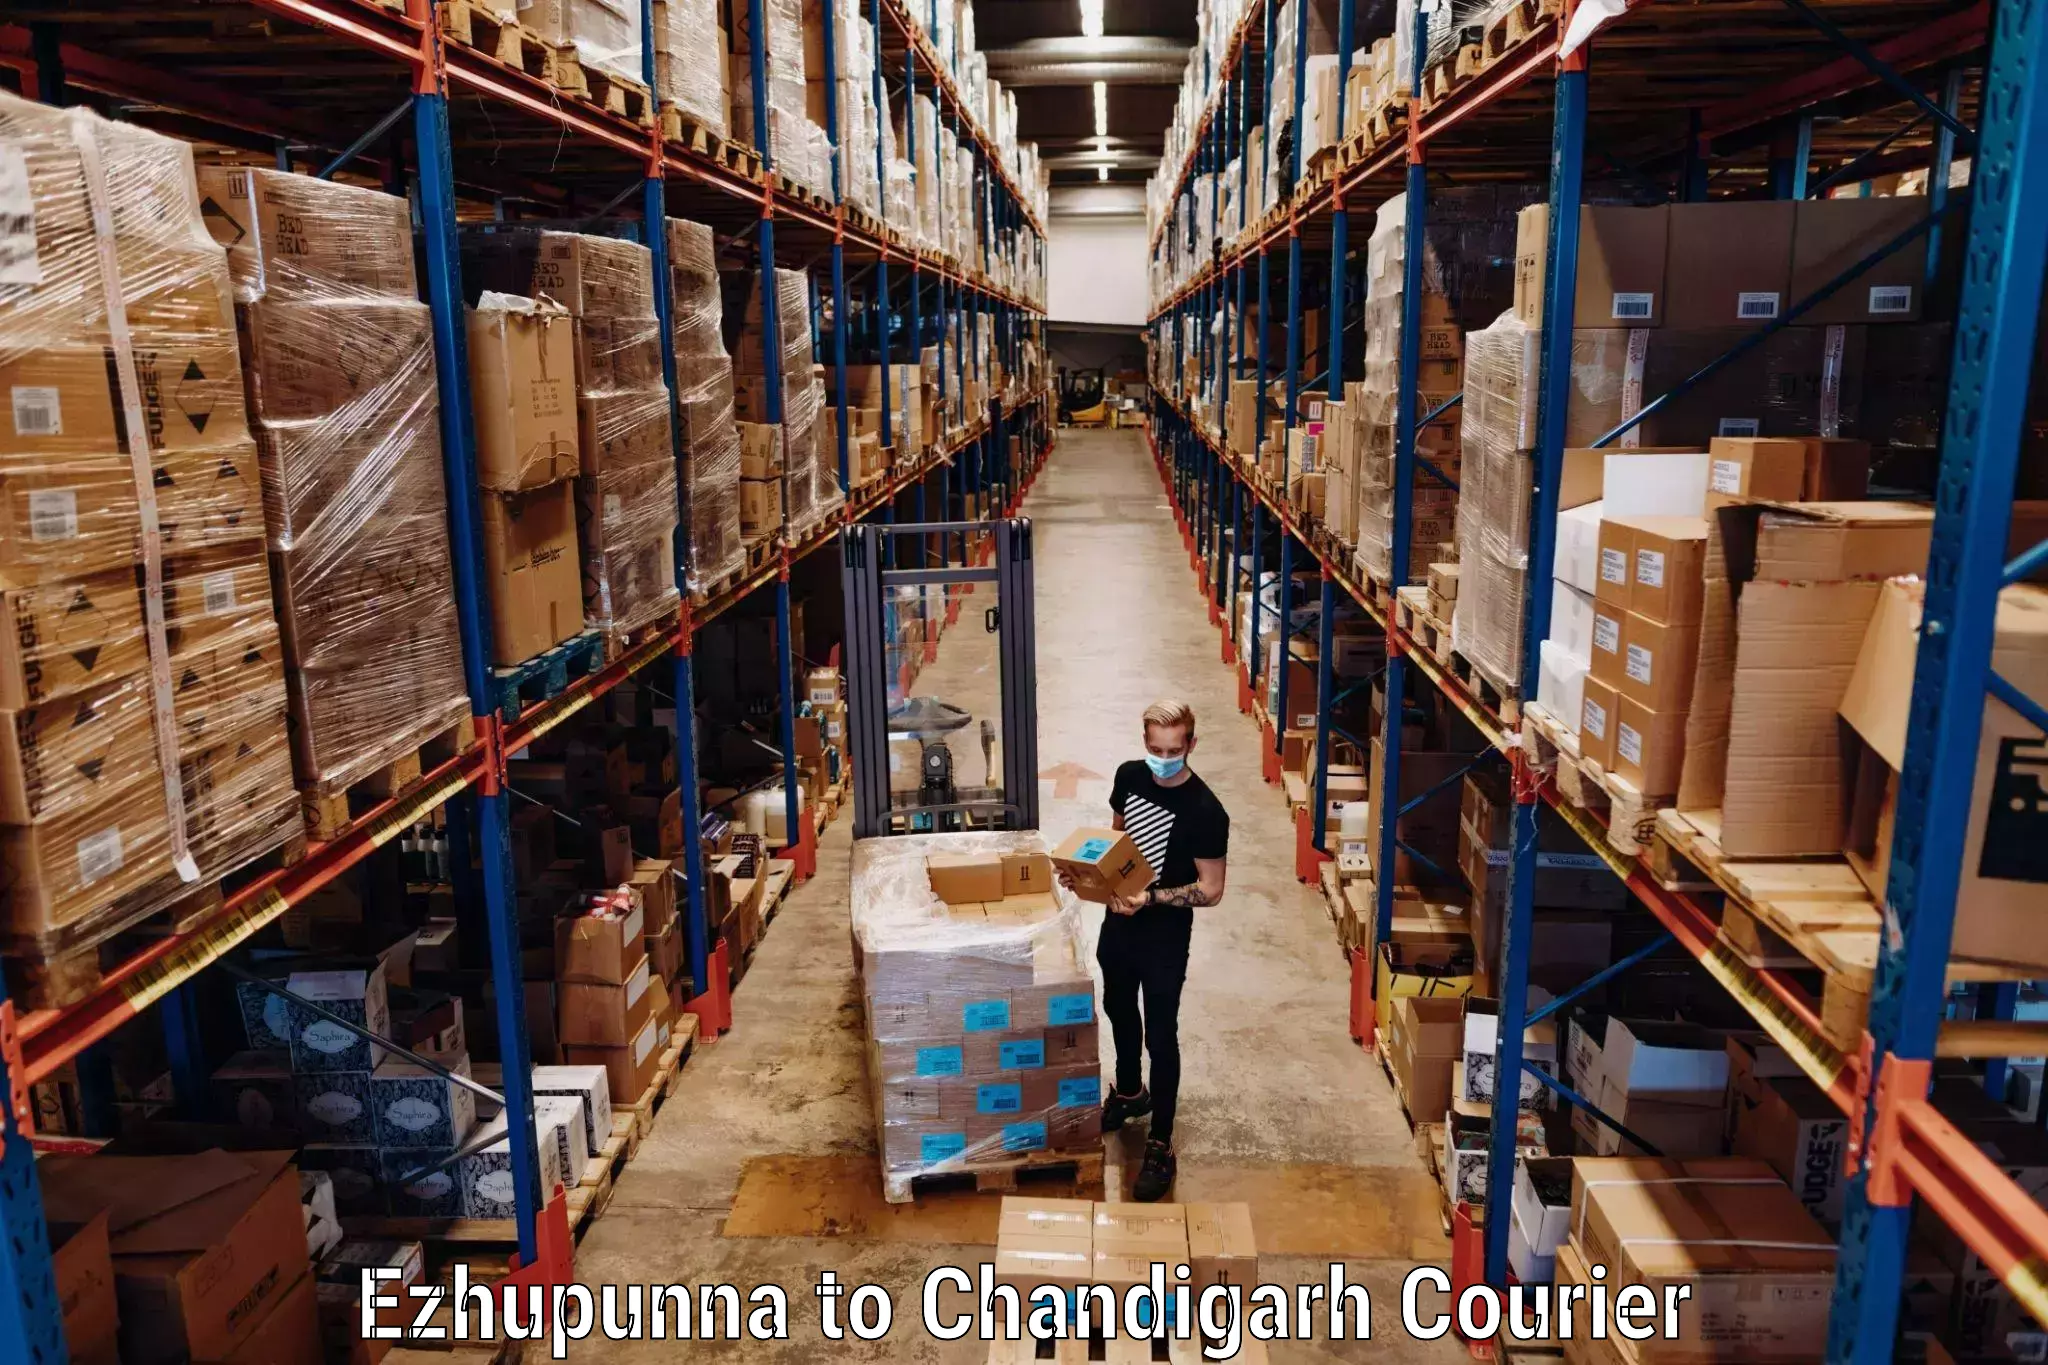 Luggage transport deals Ezhupunna to Chandigarh